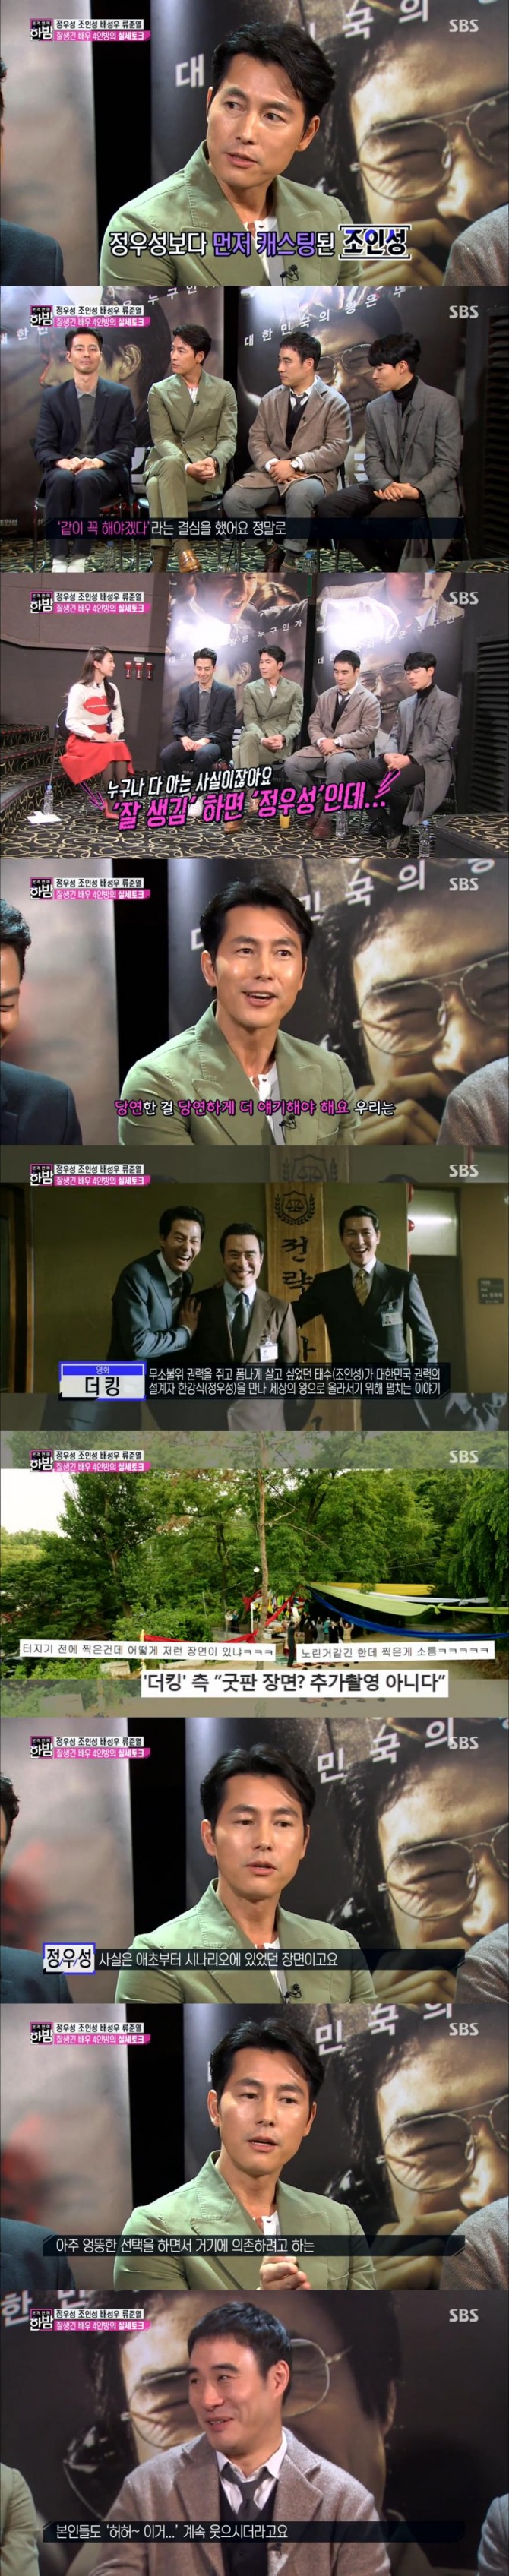 17일 방송된  SBS '본격연예 한밤'에서는 영화 더 킹의 주연 정우성, 조인성, 배성우, 류준열의 인터뷰가 그려졌다./사진=SBS 방송 캡처